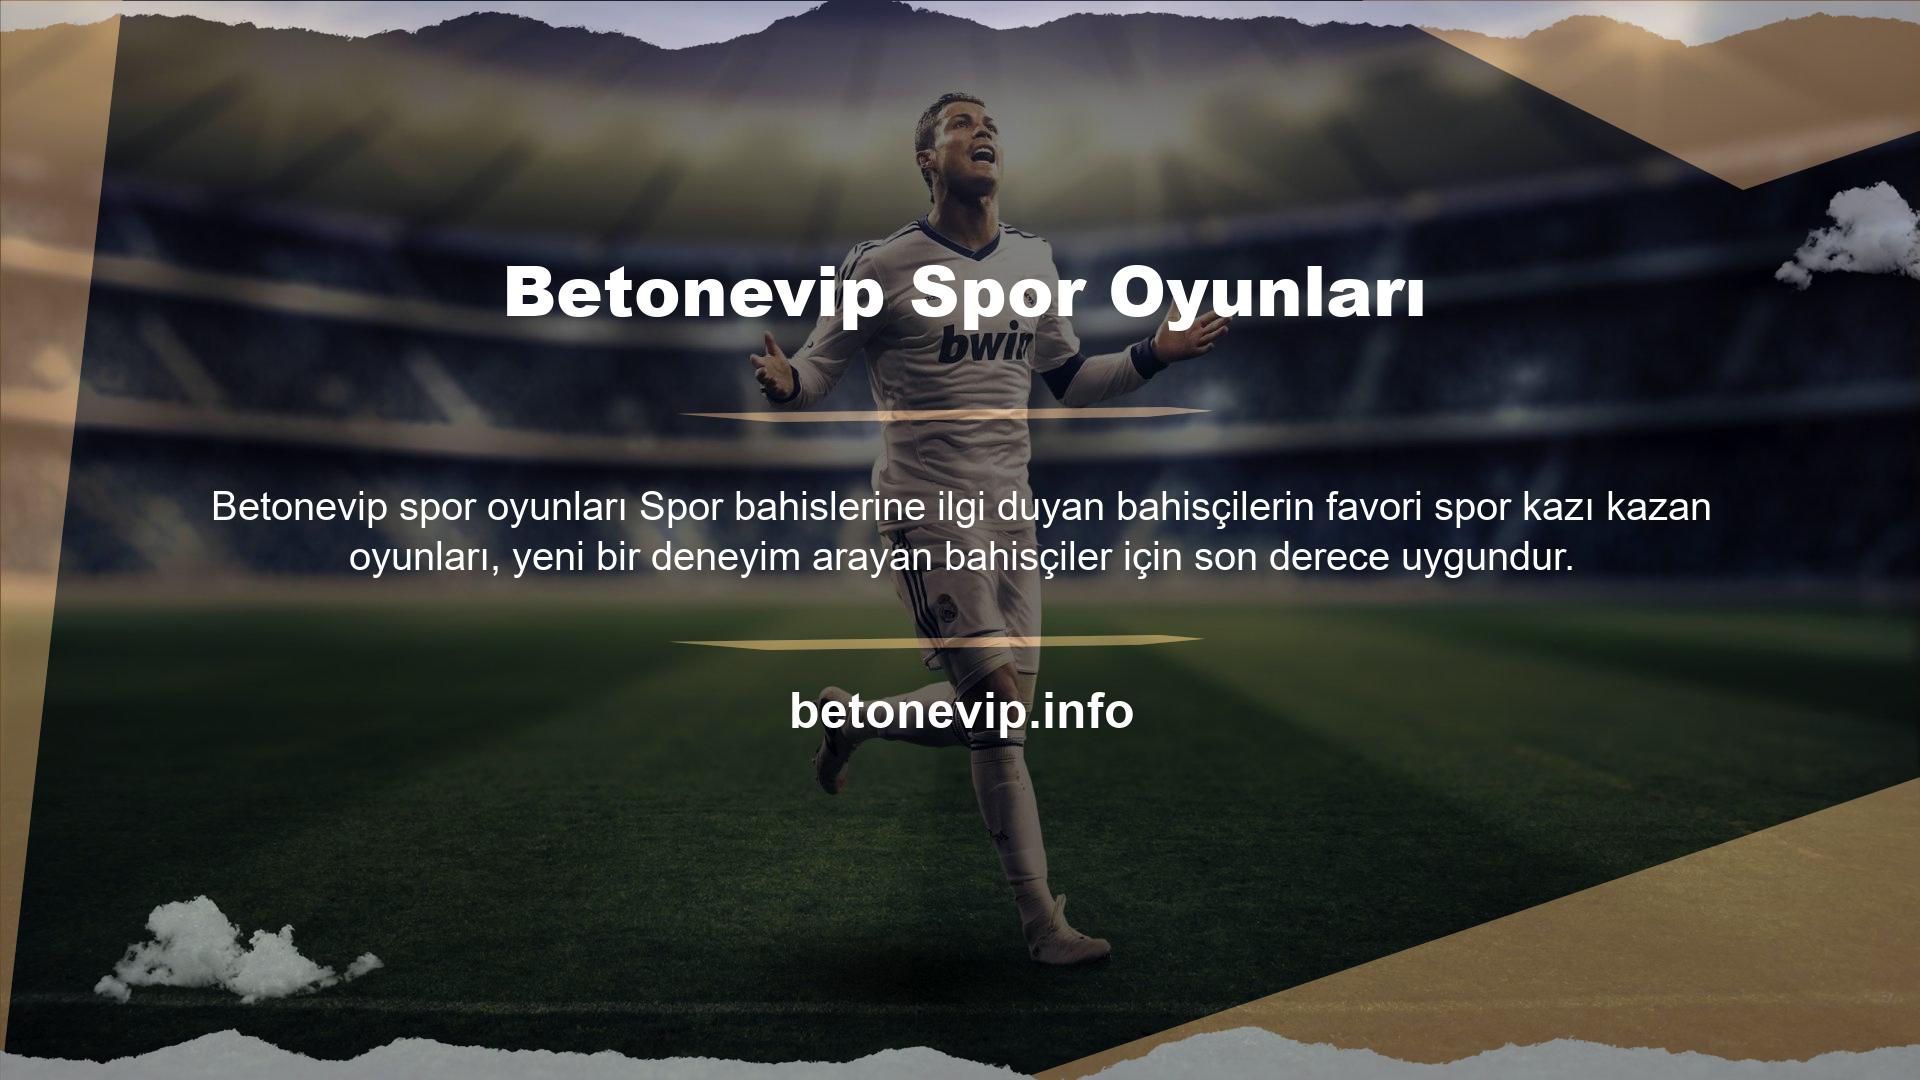 24 farklı seçeneği bulunan spor kazı kazan oyunları, Betonevip tarafından sunulan kazı kazan oyunları arasında iyi bilinmektedir